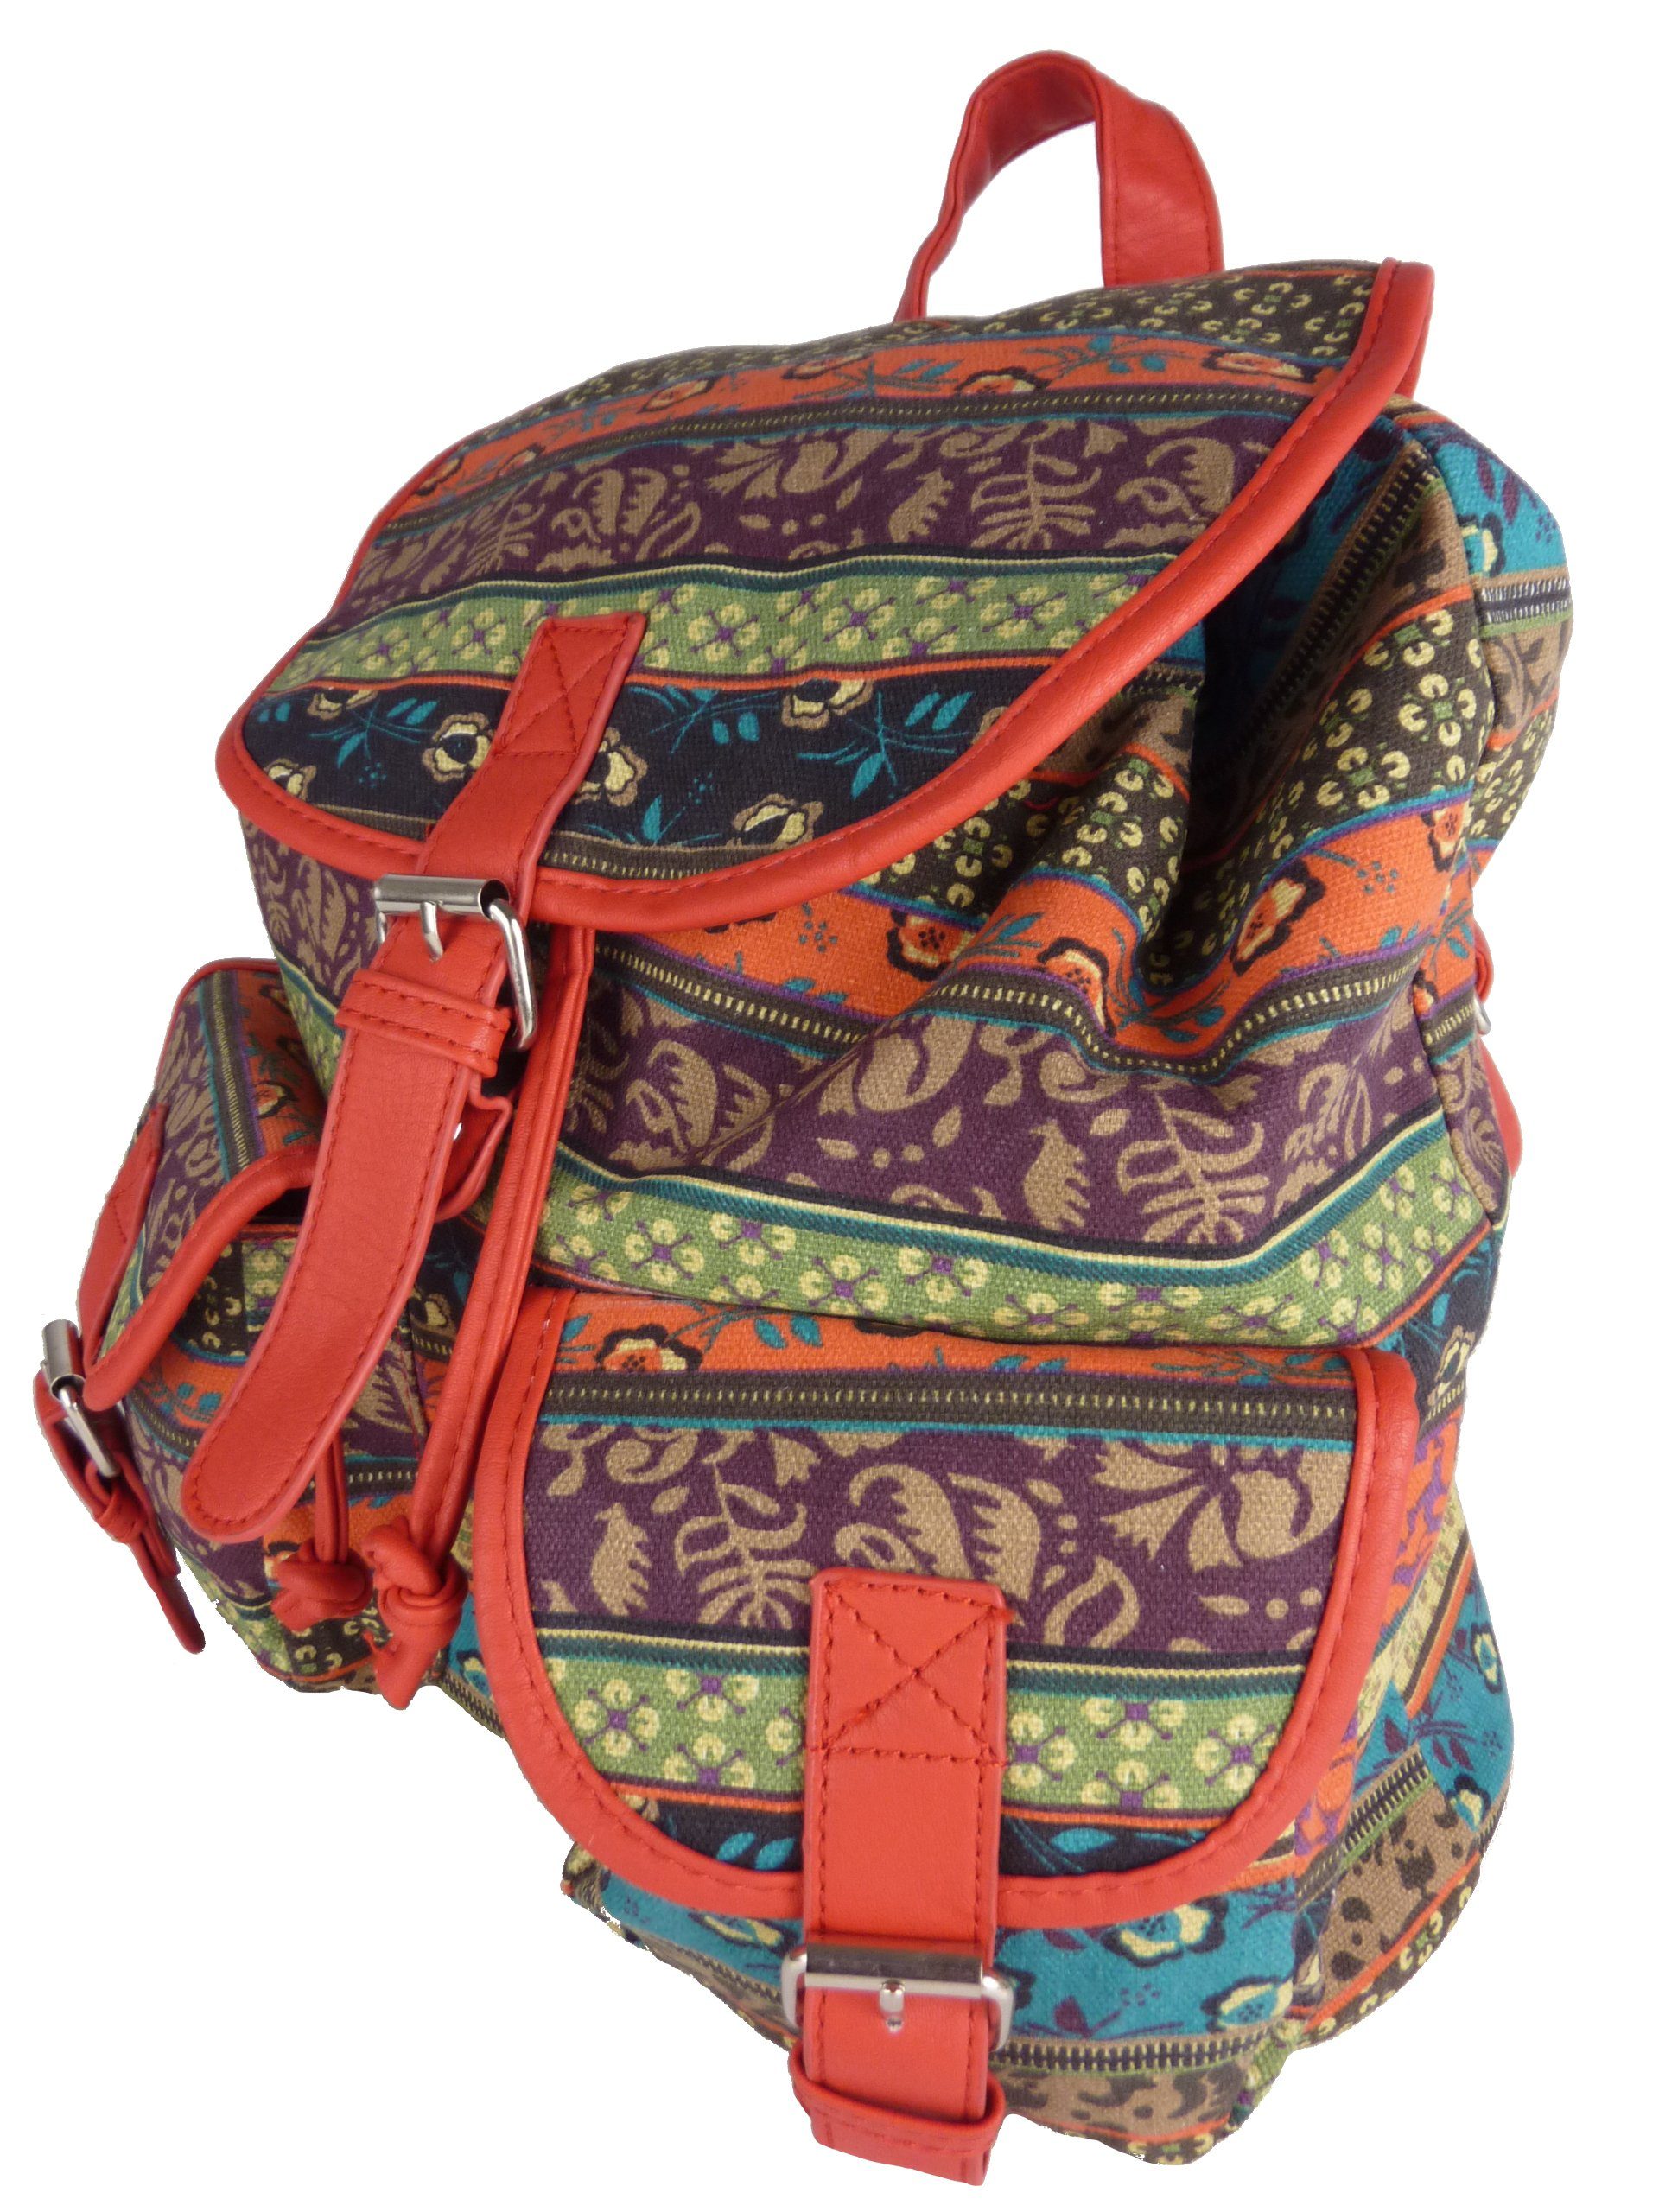 OTTO Damen Accessoires Taschen Reisetaschen Rucksack »Damenrucksack Umhängetasche« Anti-Diebstahl-Rucksack Lederrucksack Reise-Lederrucksack mit großer Kapazität Vintage-Leder-Büchertasche 